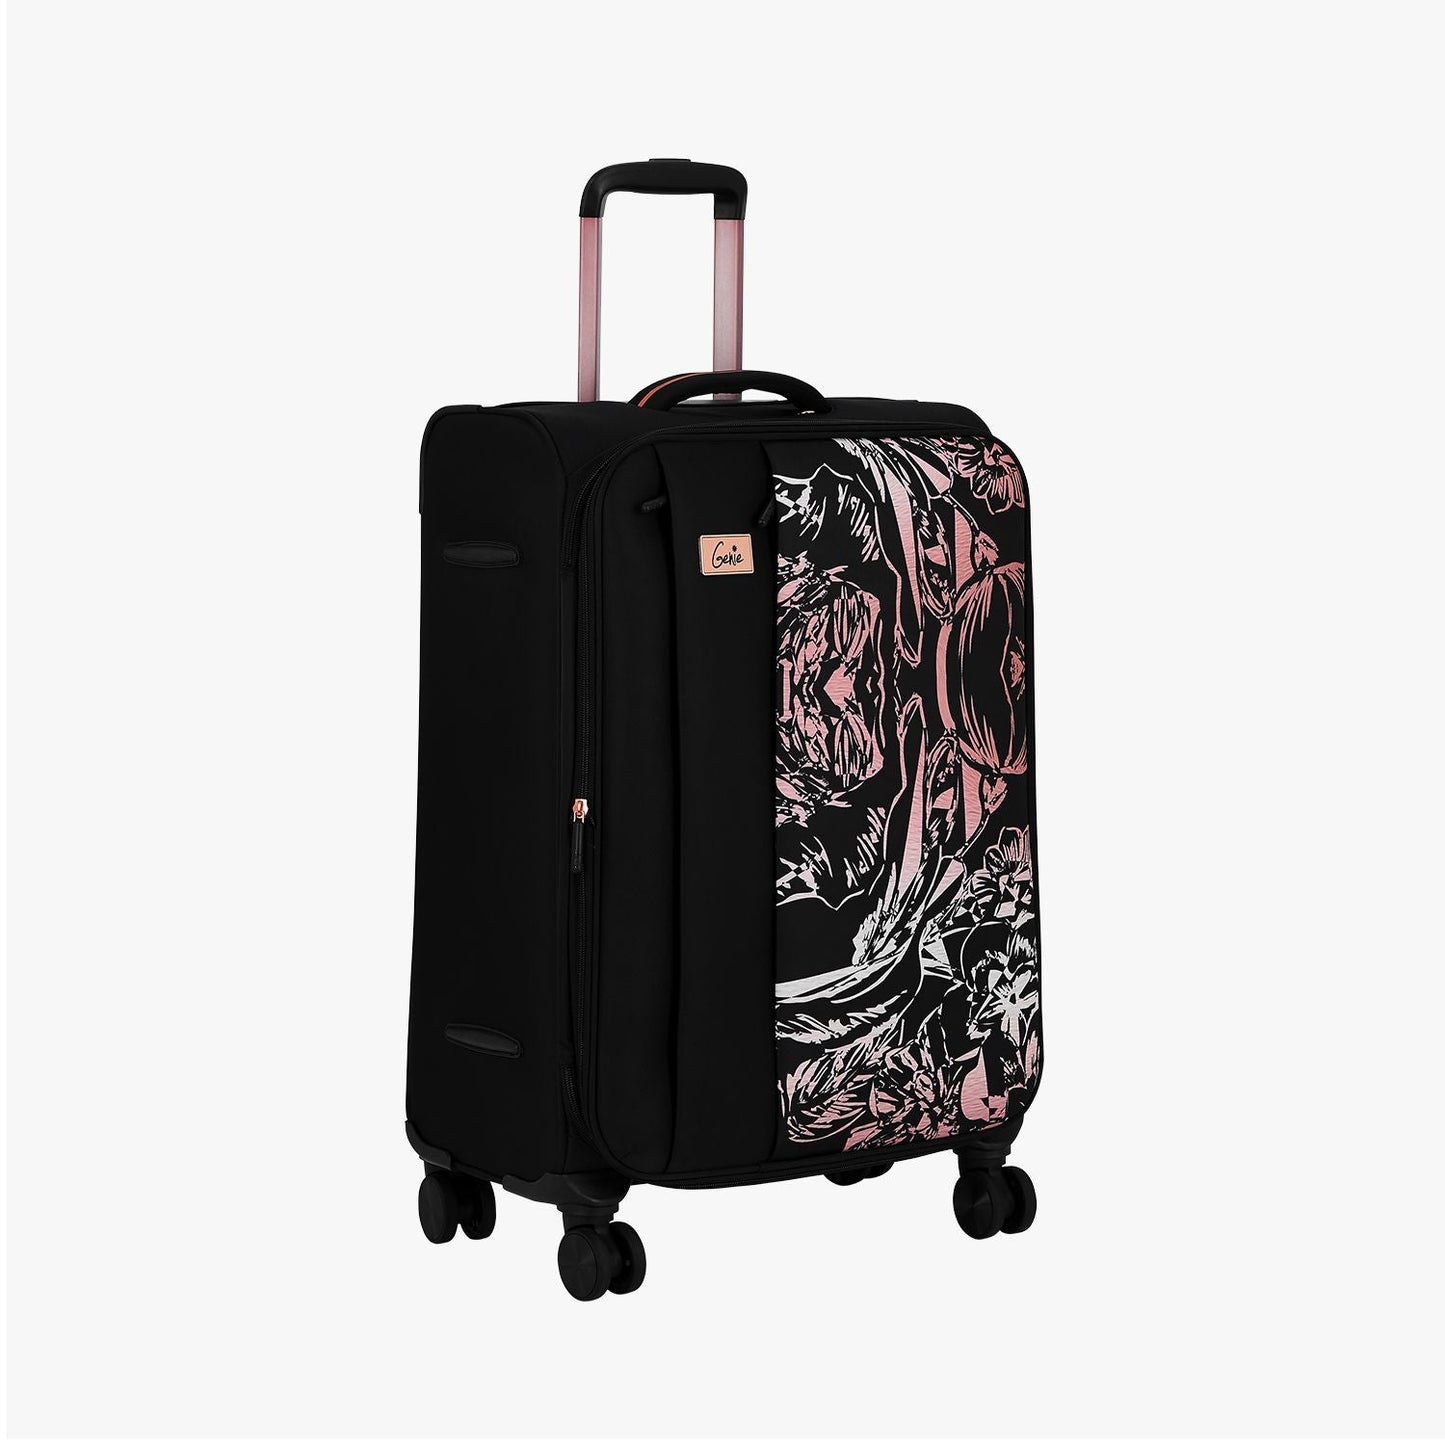 Genie Hazel Soft Luggage Suitcase